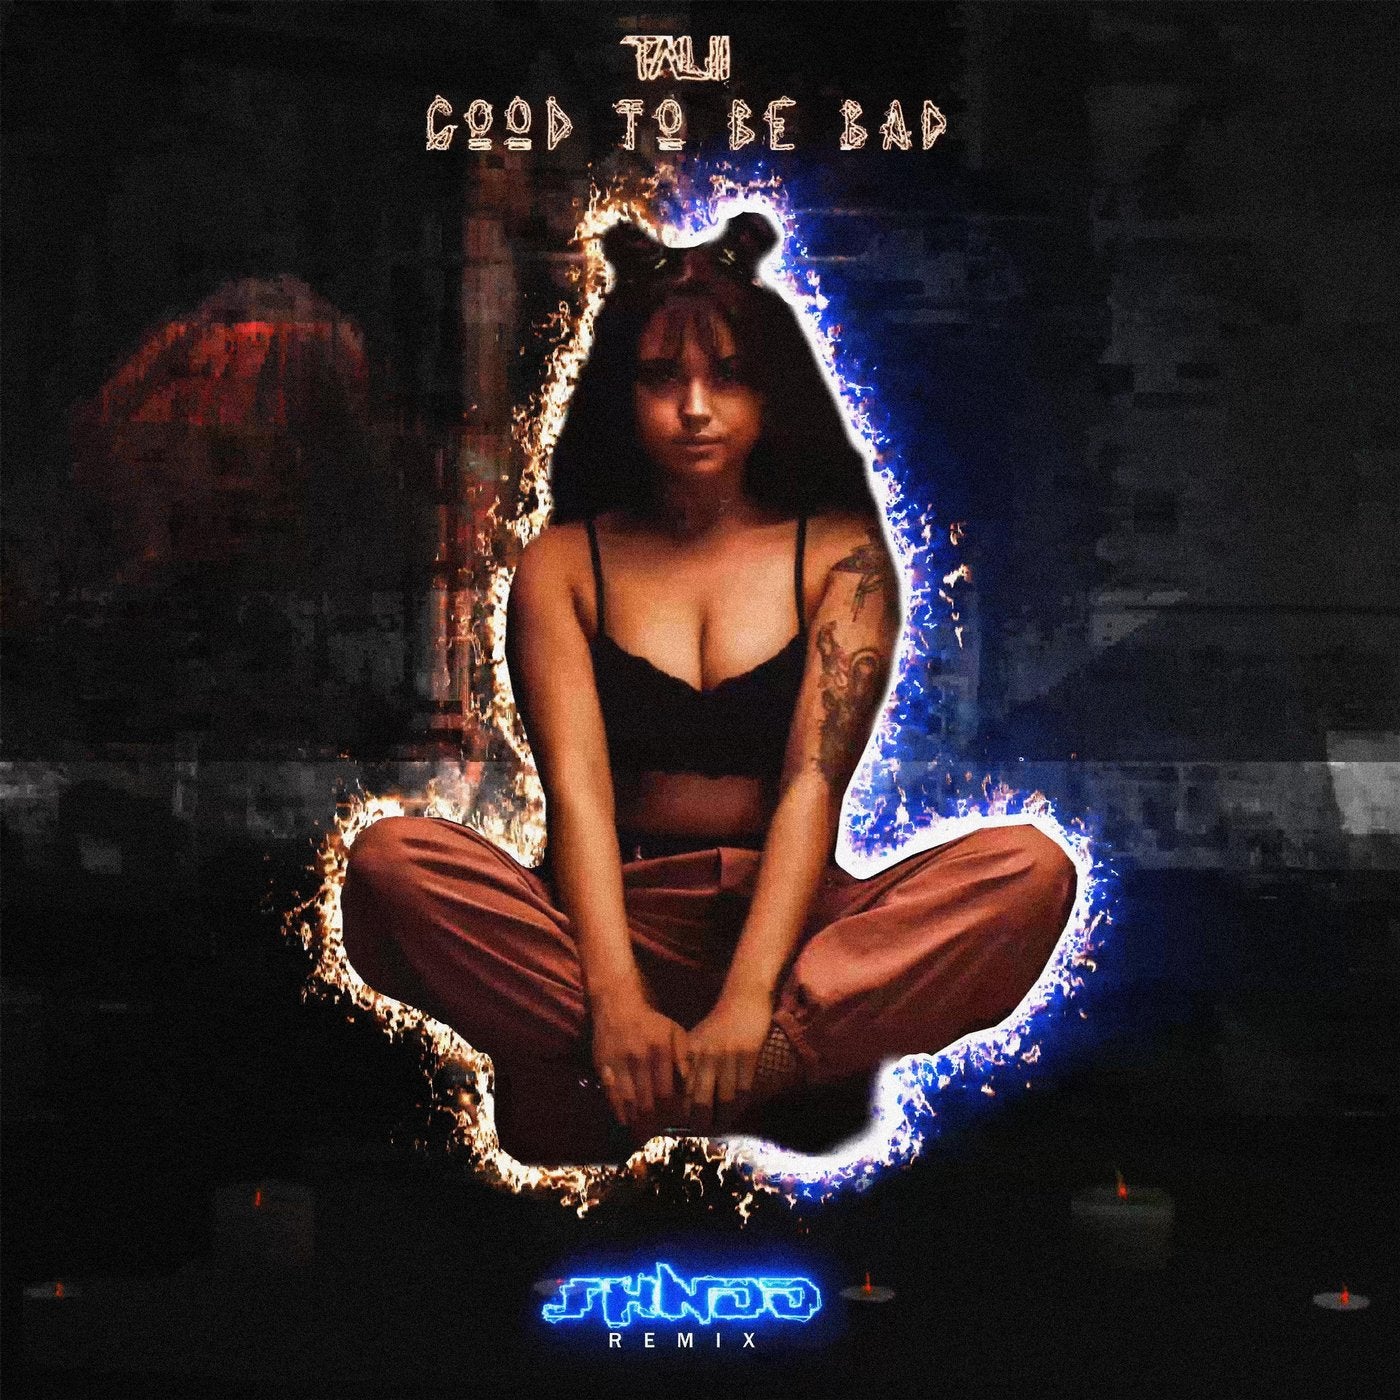 GOOD TO BE BAD (Shndō Remix)